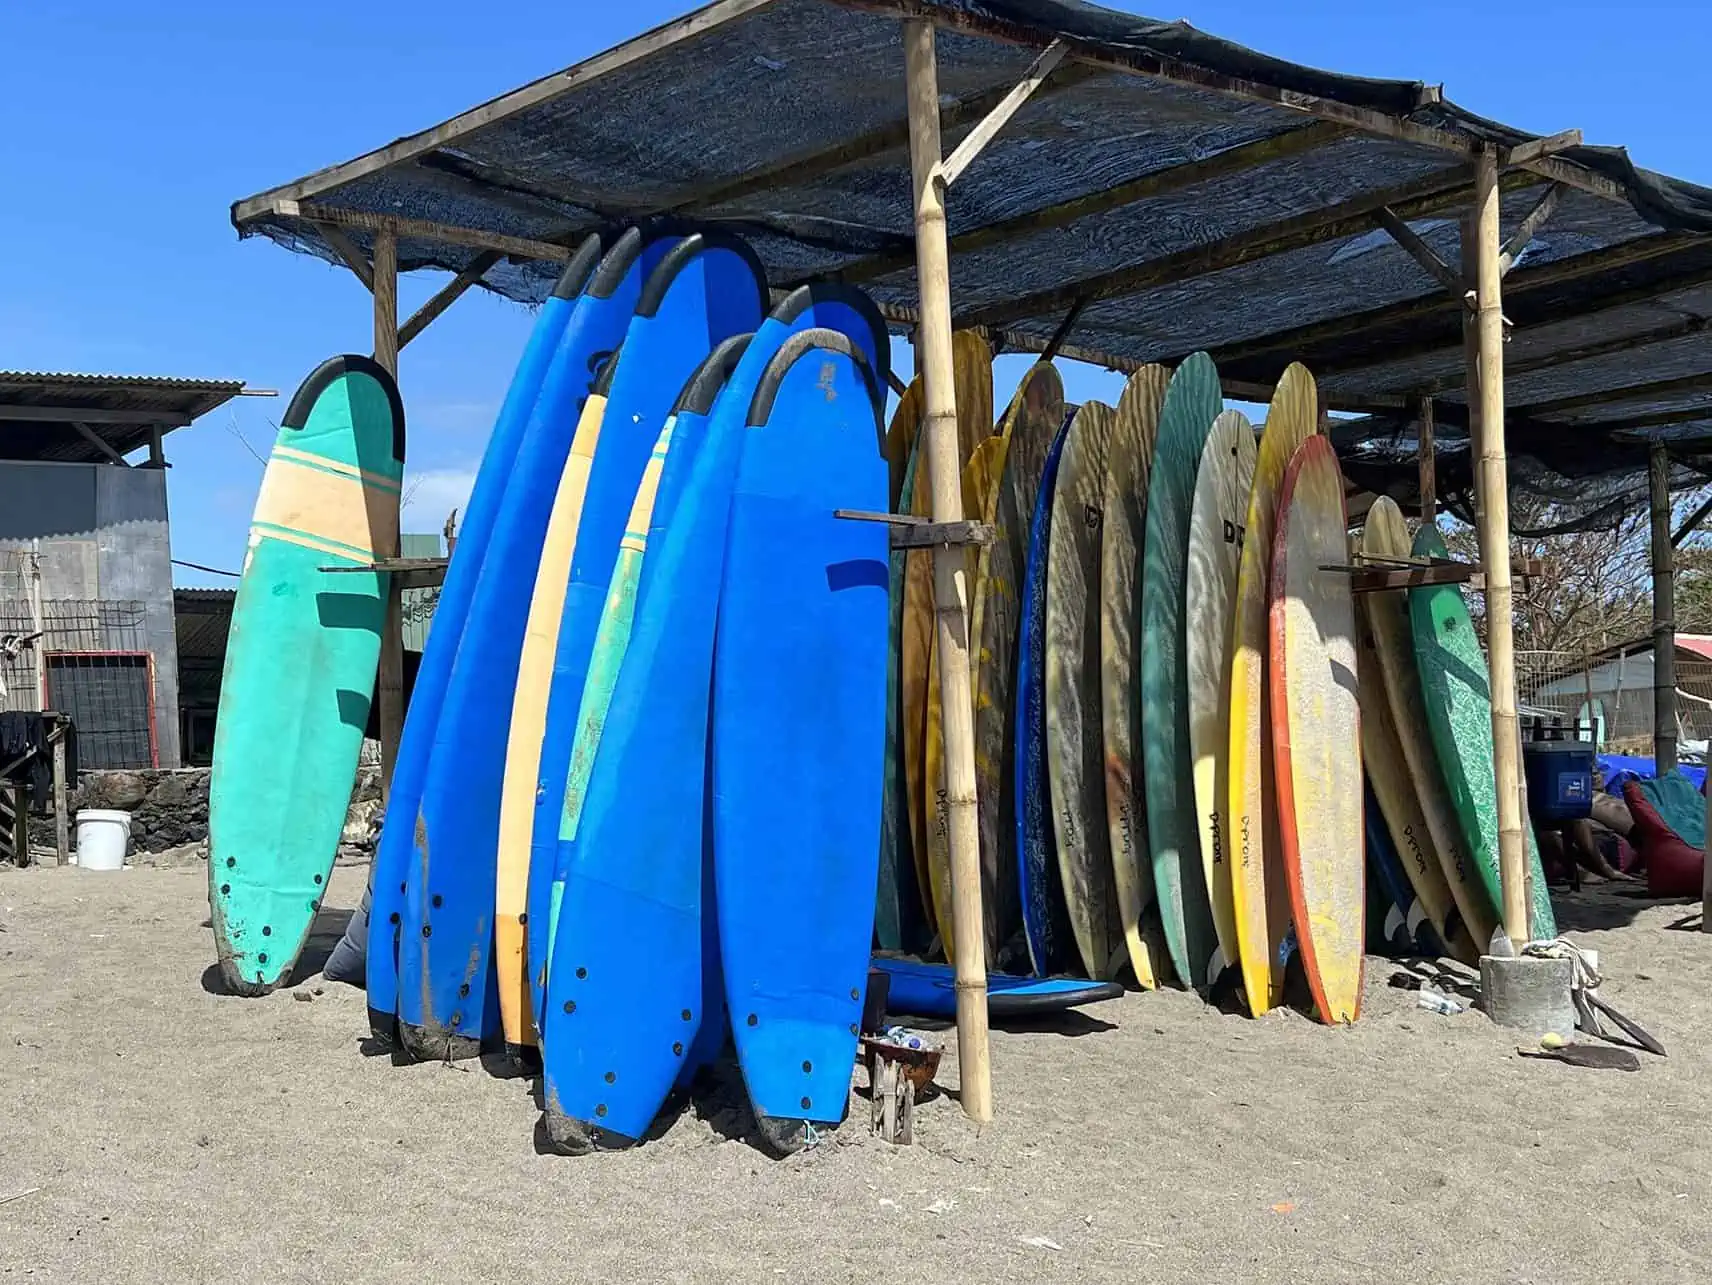 Surfbrettverleih in Bali, Indonesien